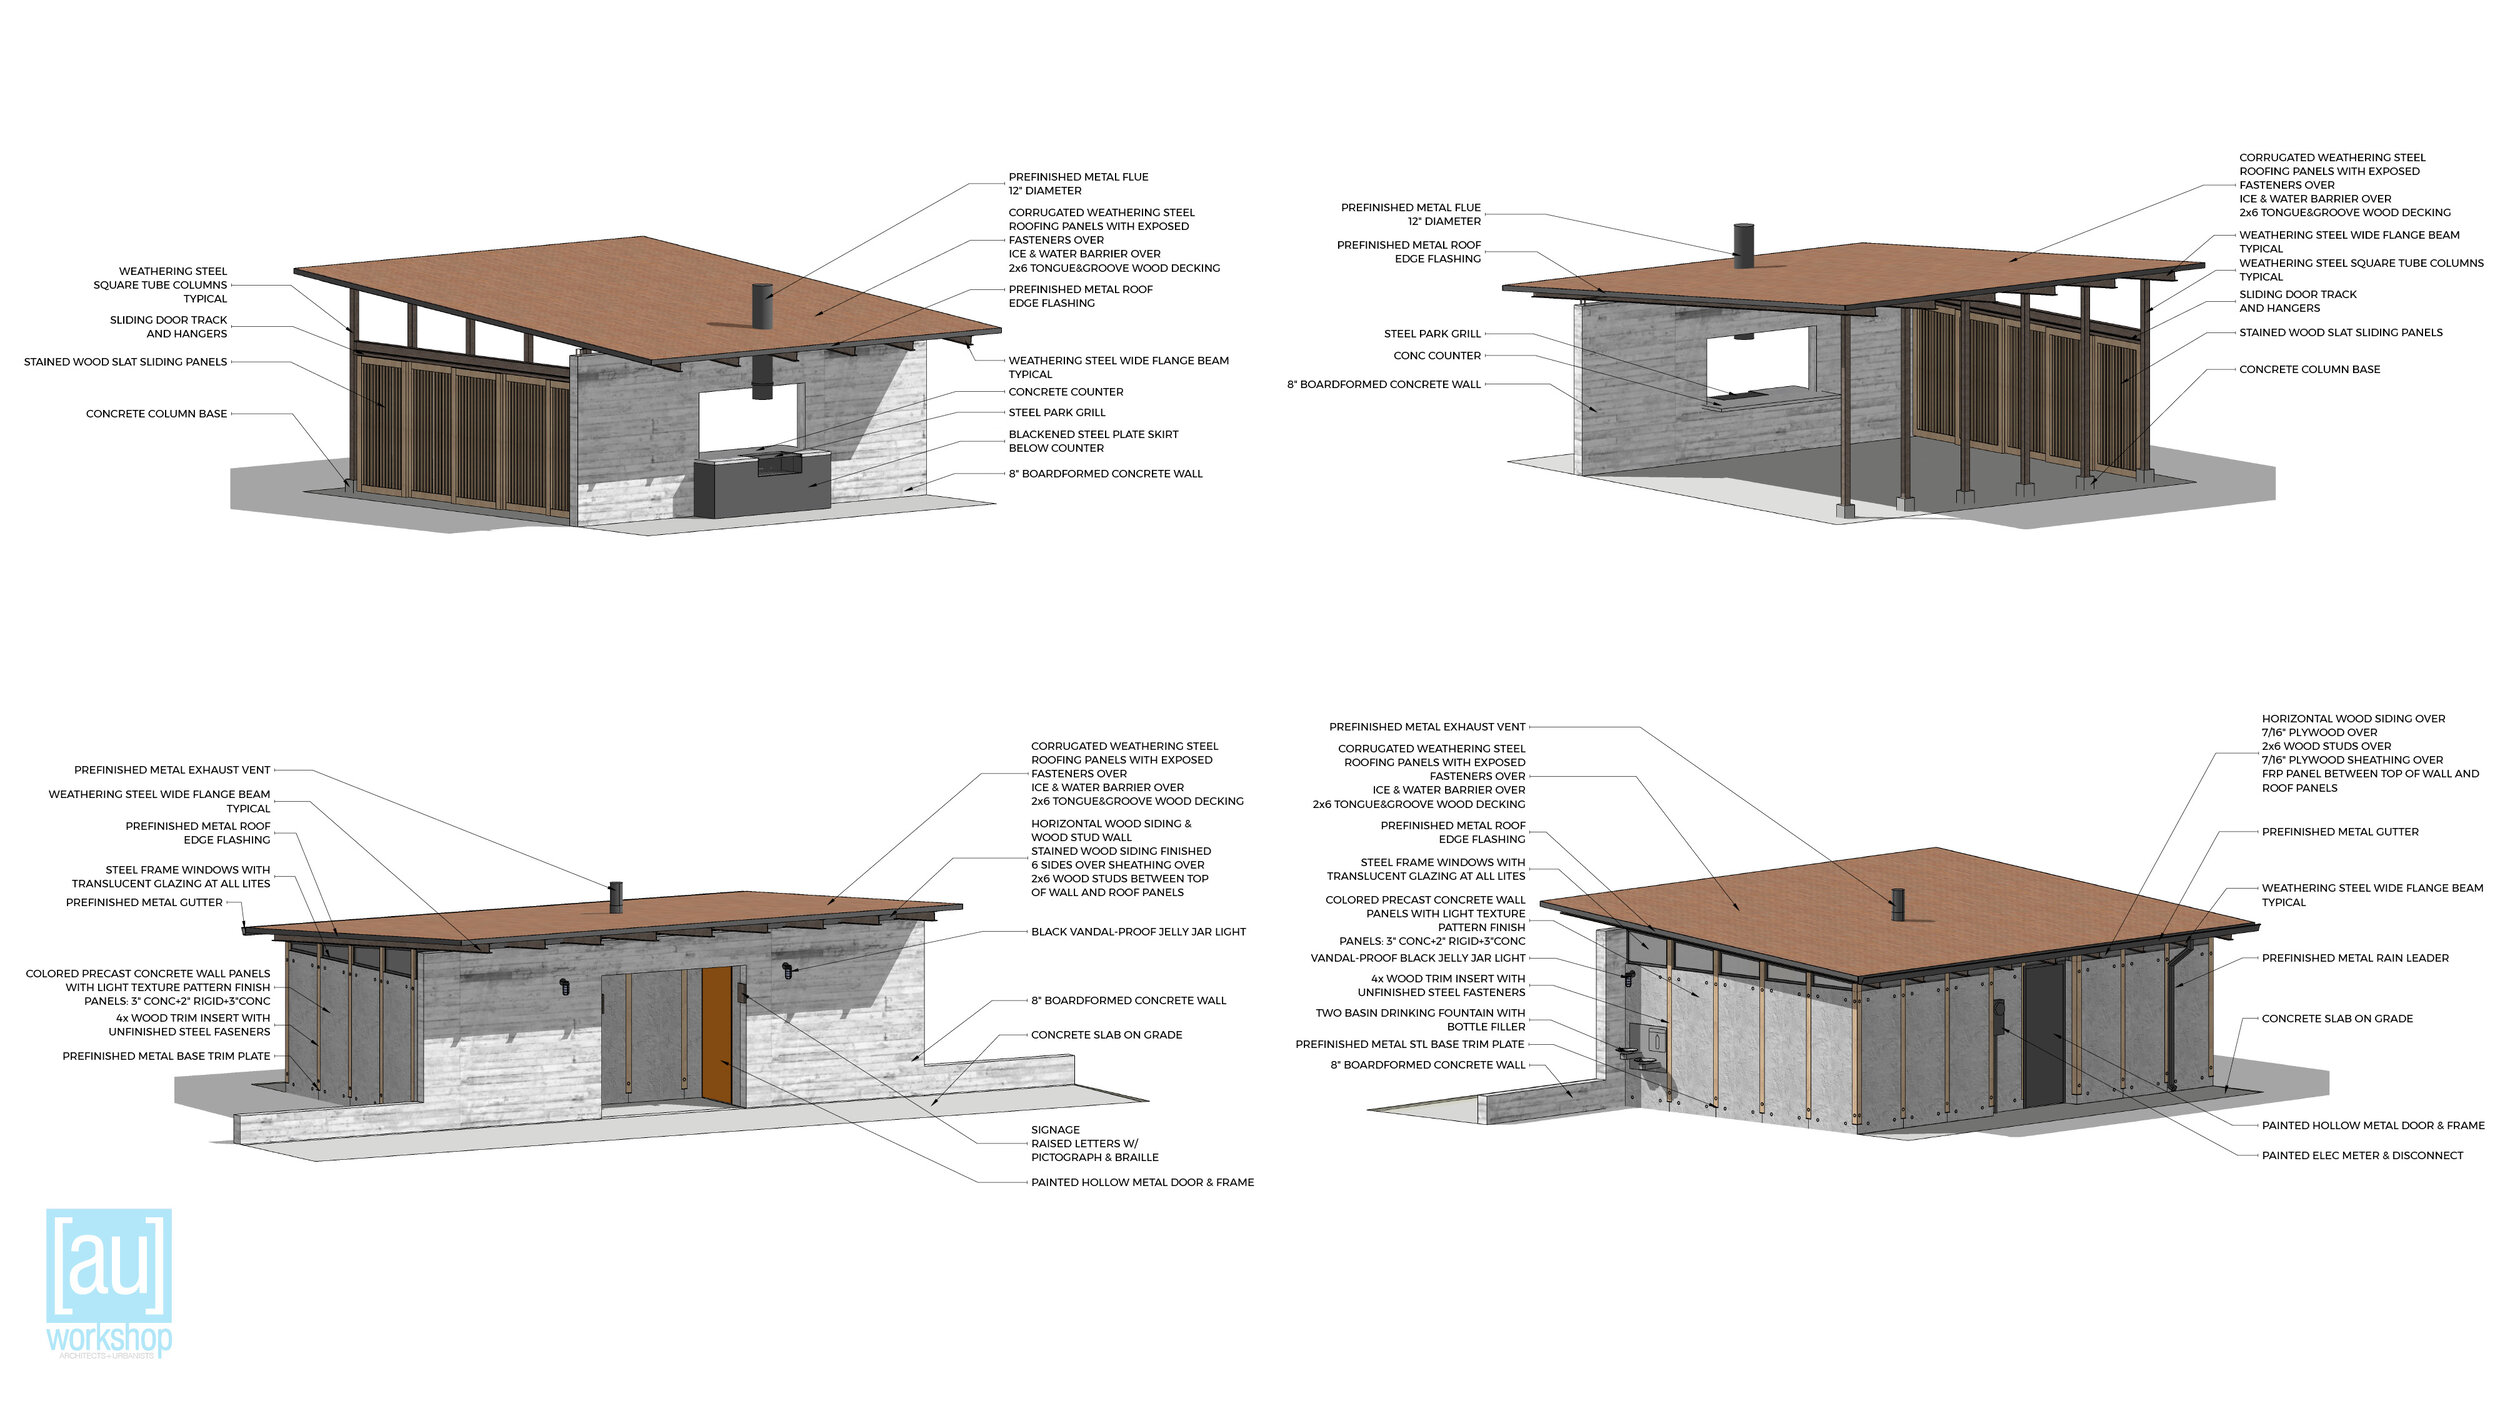 Picnic Shelter and Restroom Design Intent